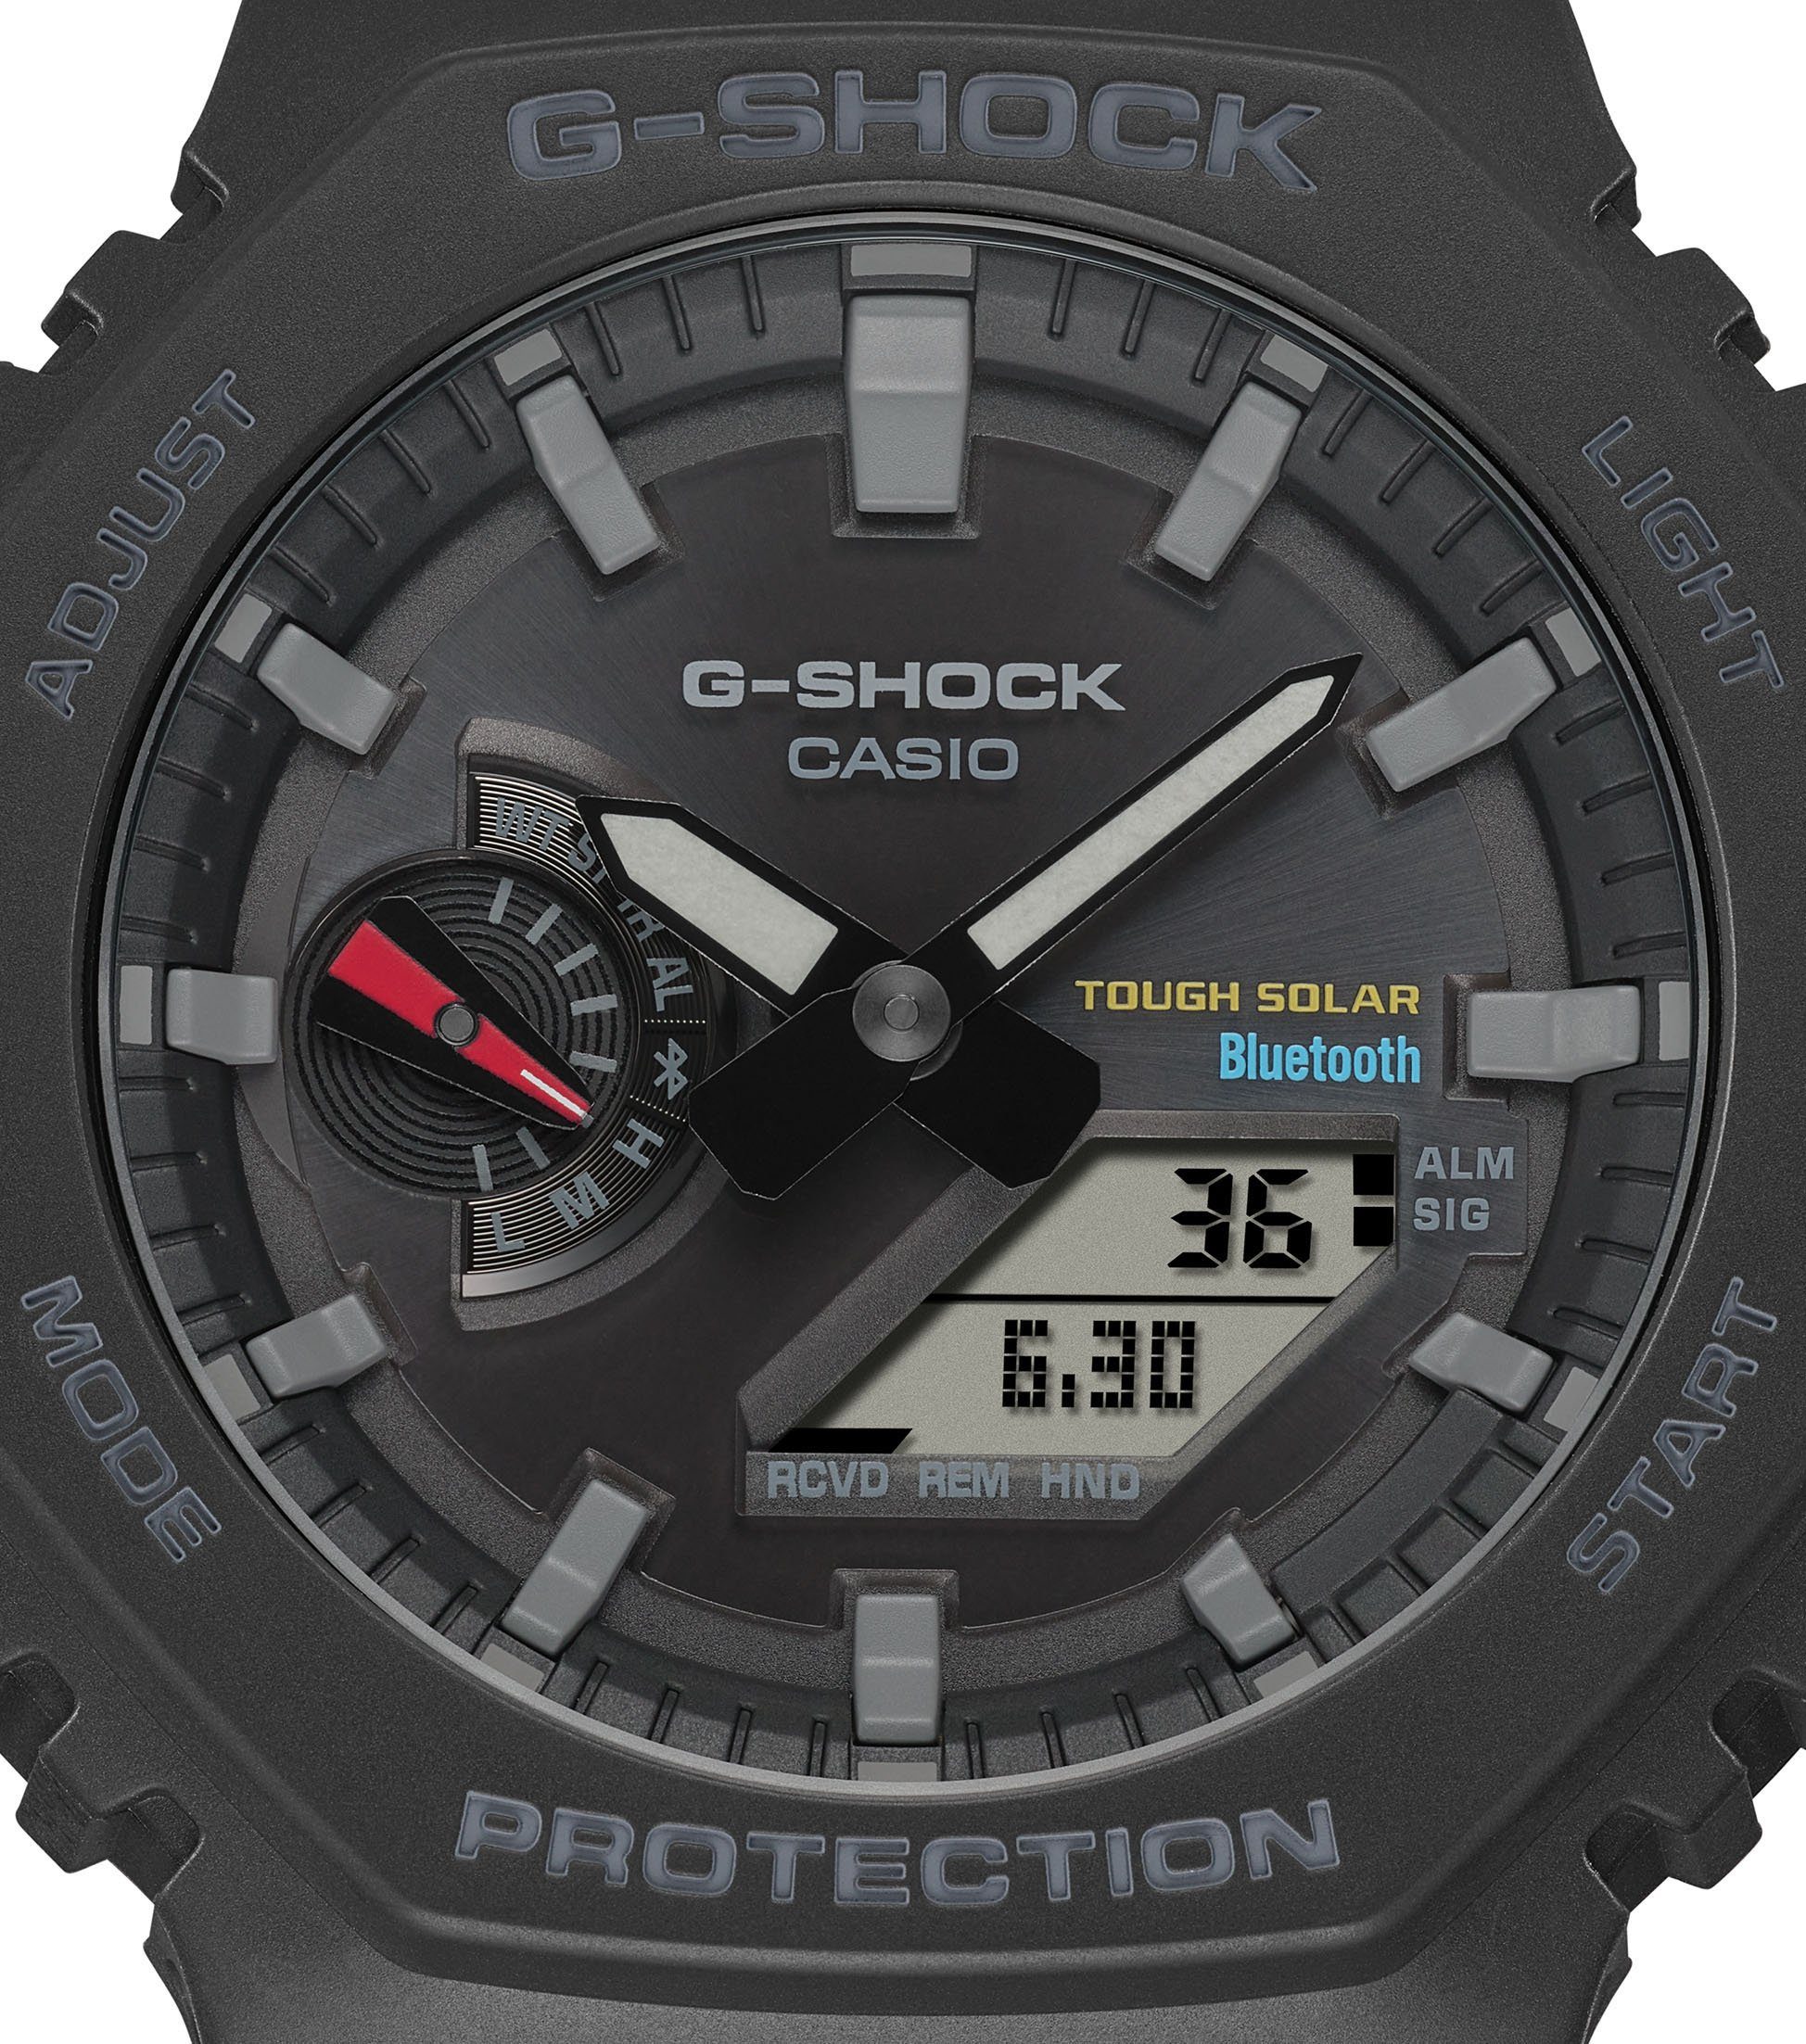 Smartwatch, Solar GA-B2100-1AER G-SHOCK CASIO